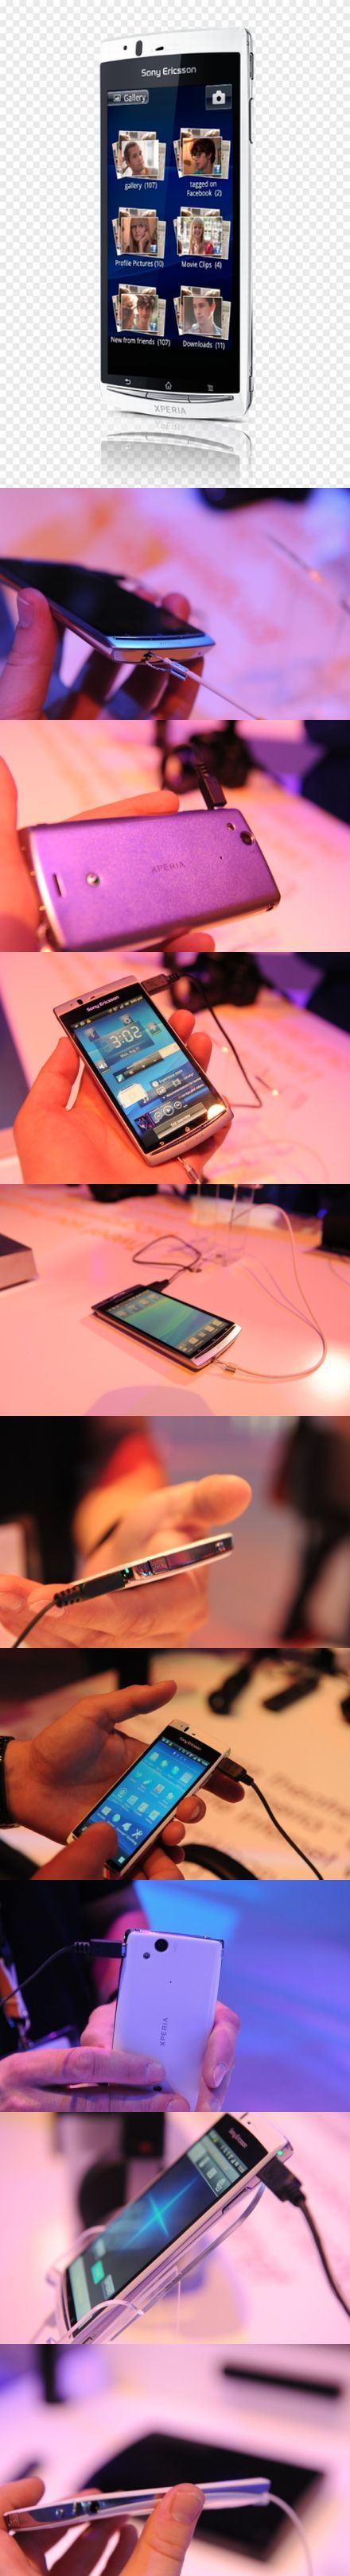 Megjelent a Sony Ericsson Xperia Arc S: 1.4 gigahertz és 3D képek